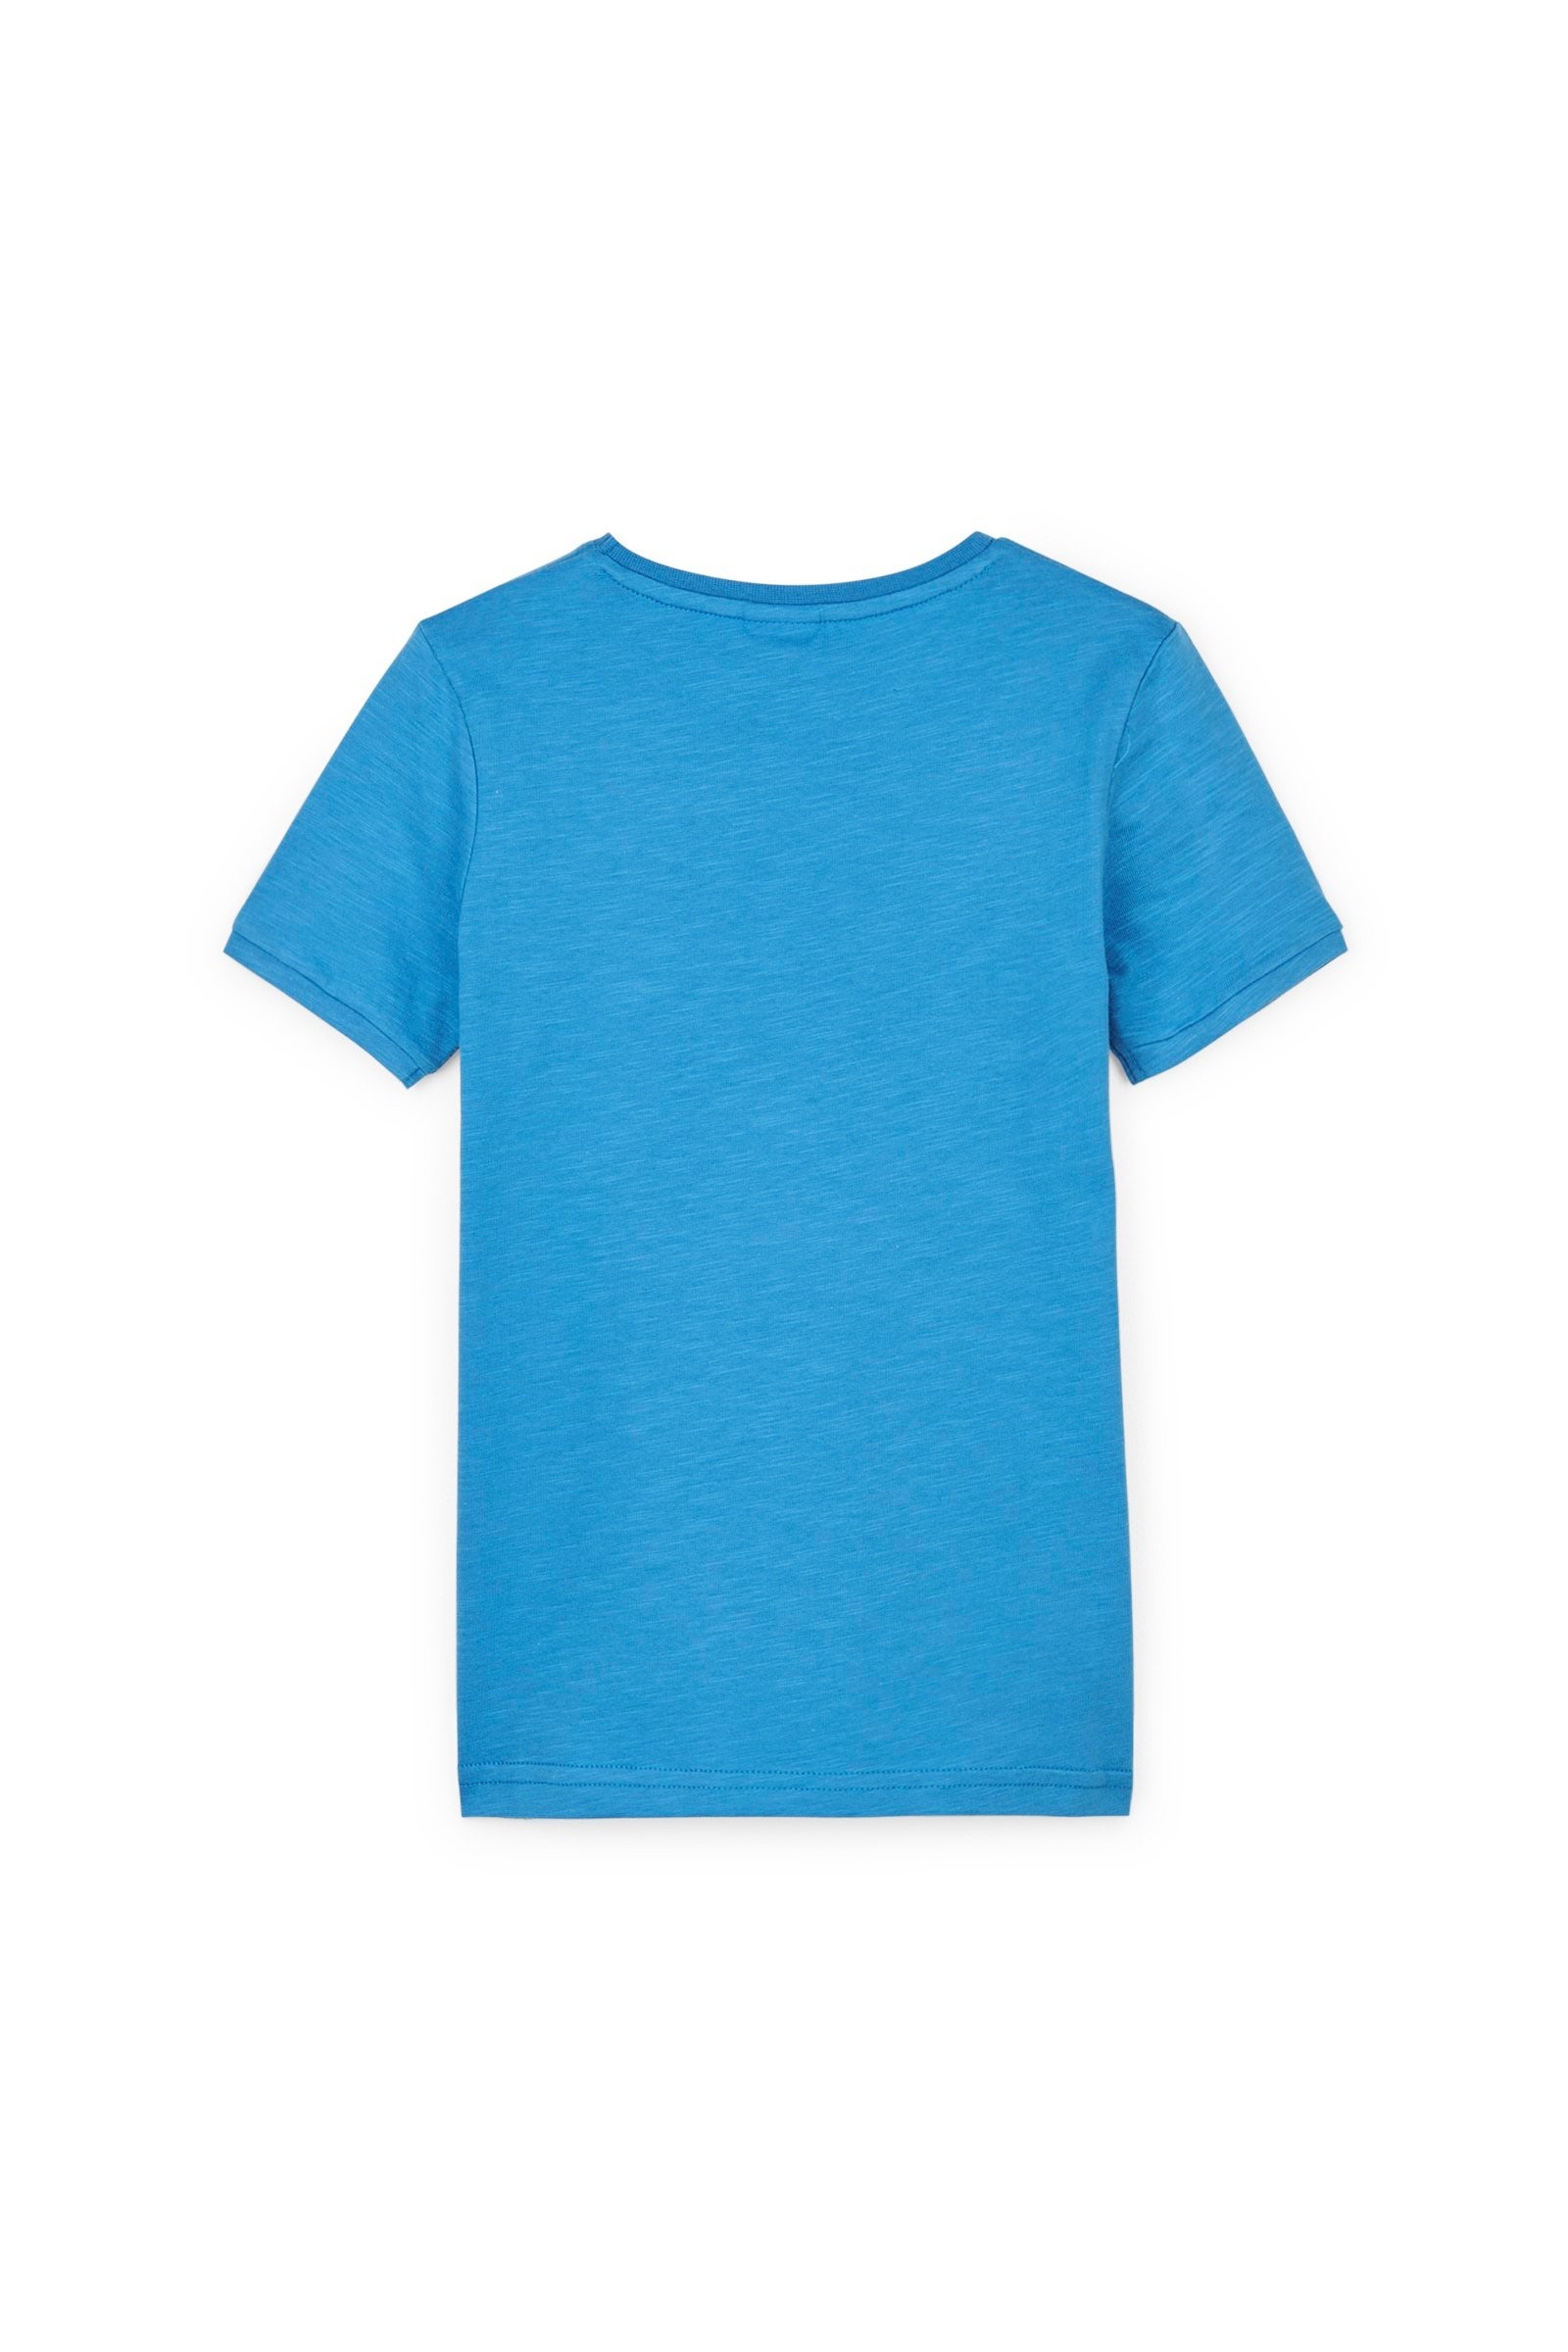 CKS Kids - YEMIEL - T-Shirt Kurzarm - Blau